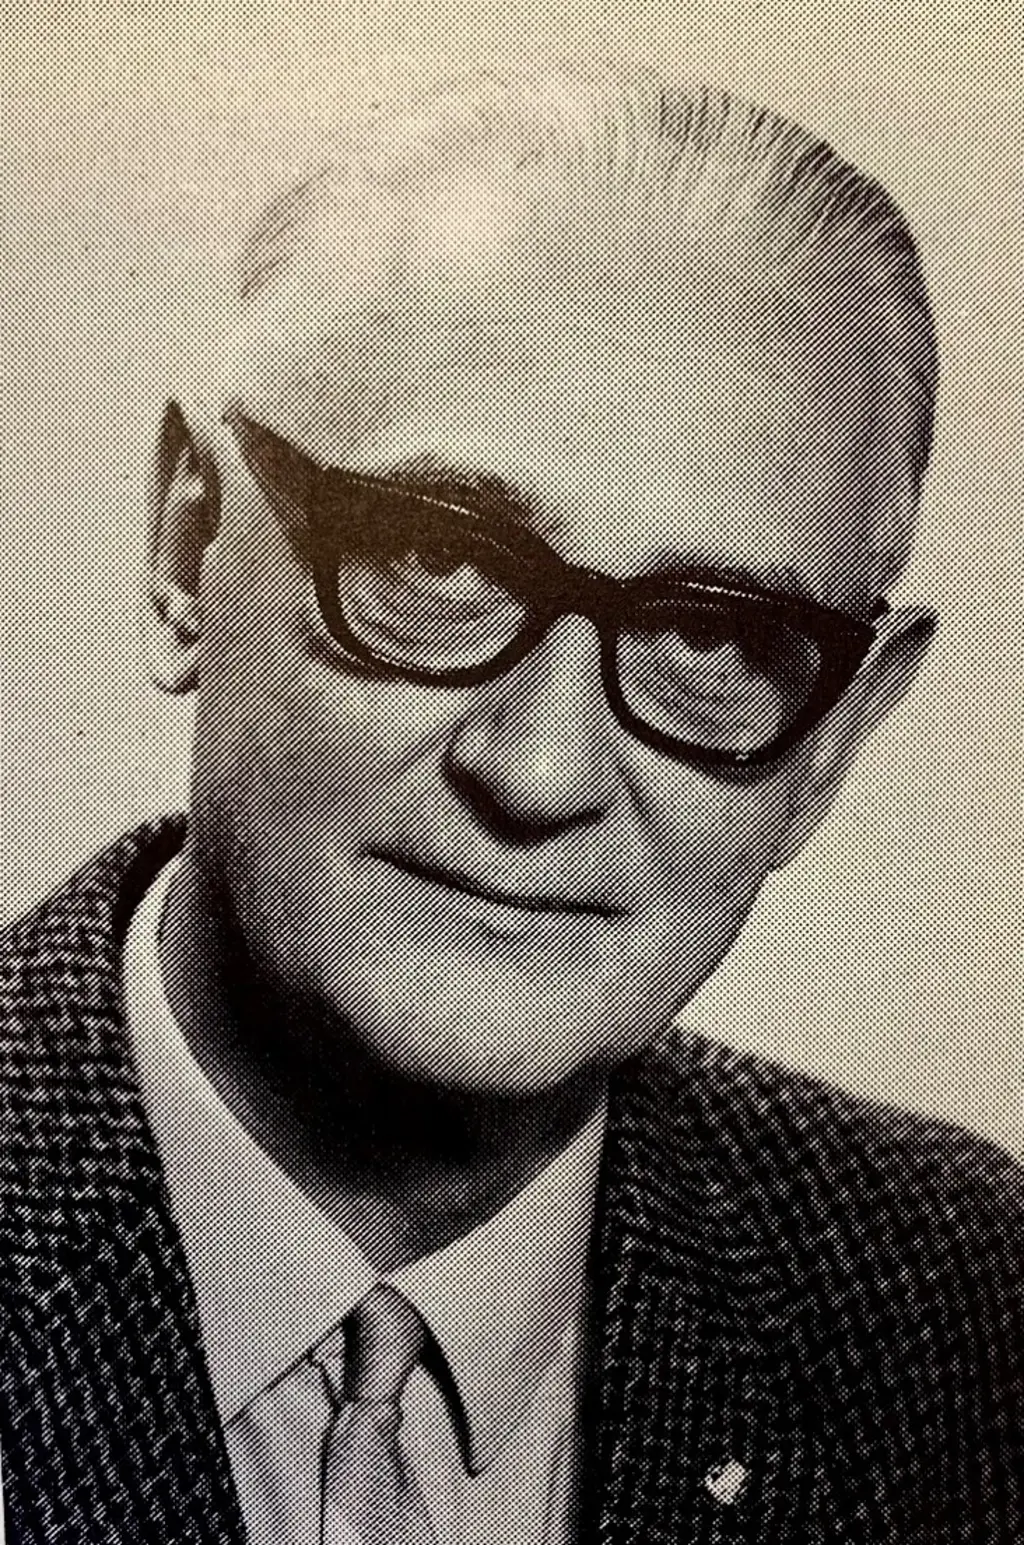 Arne Nagell